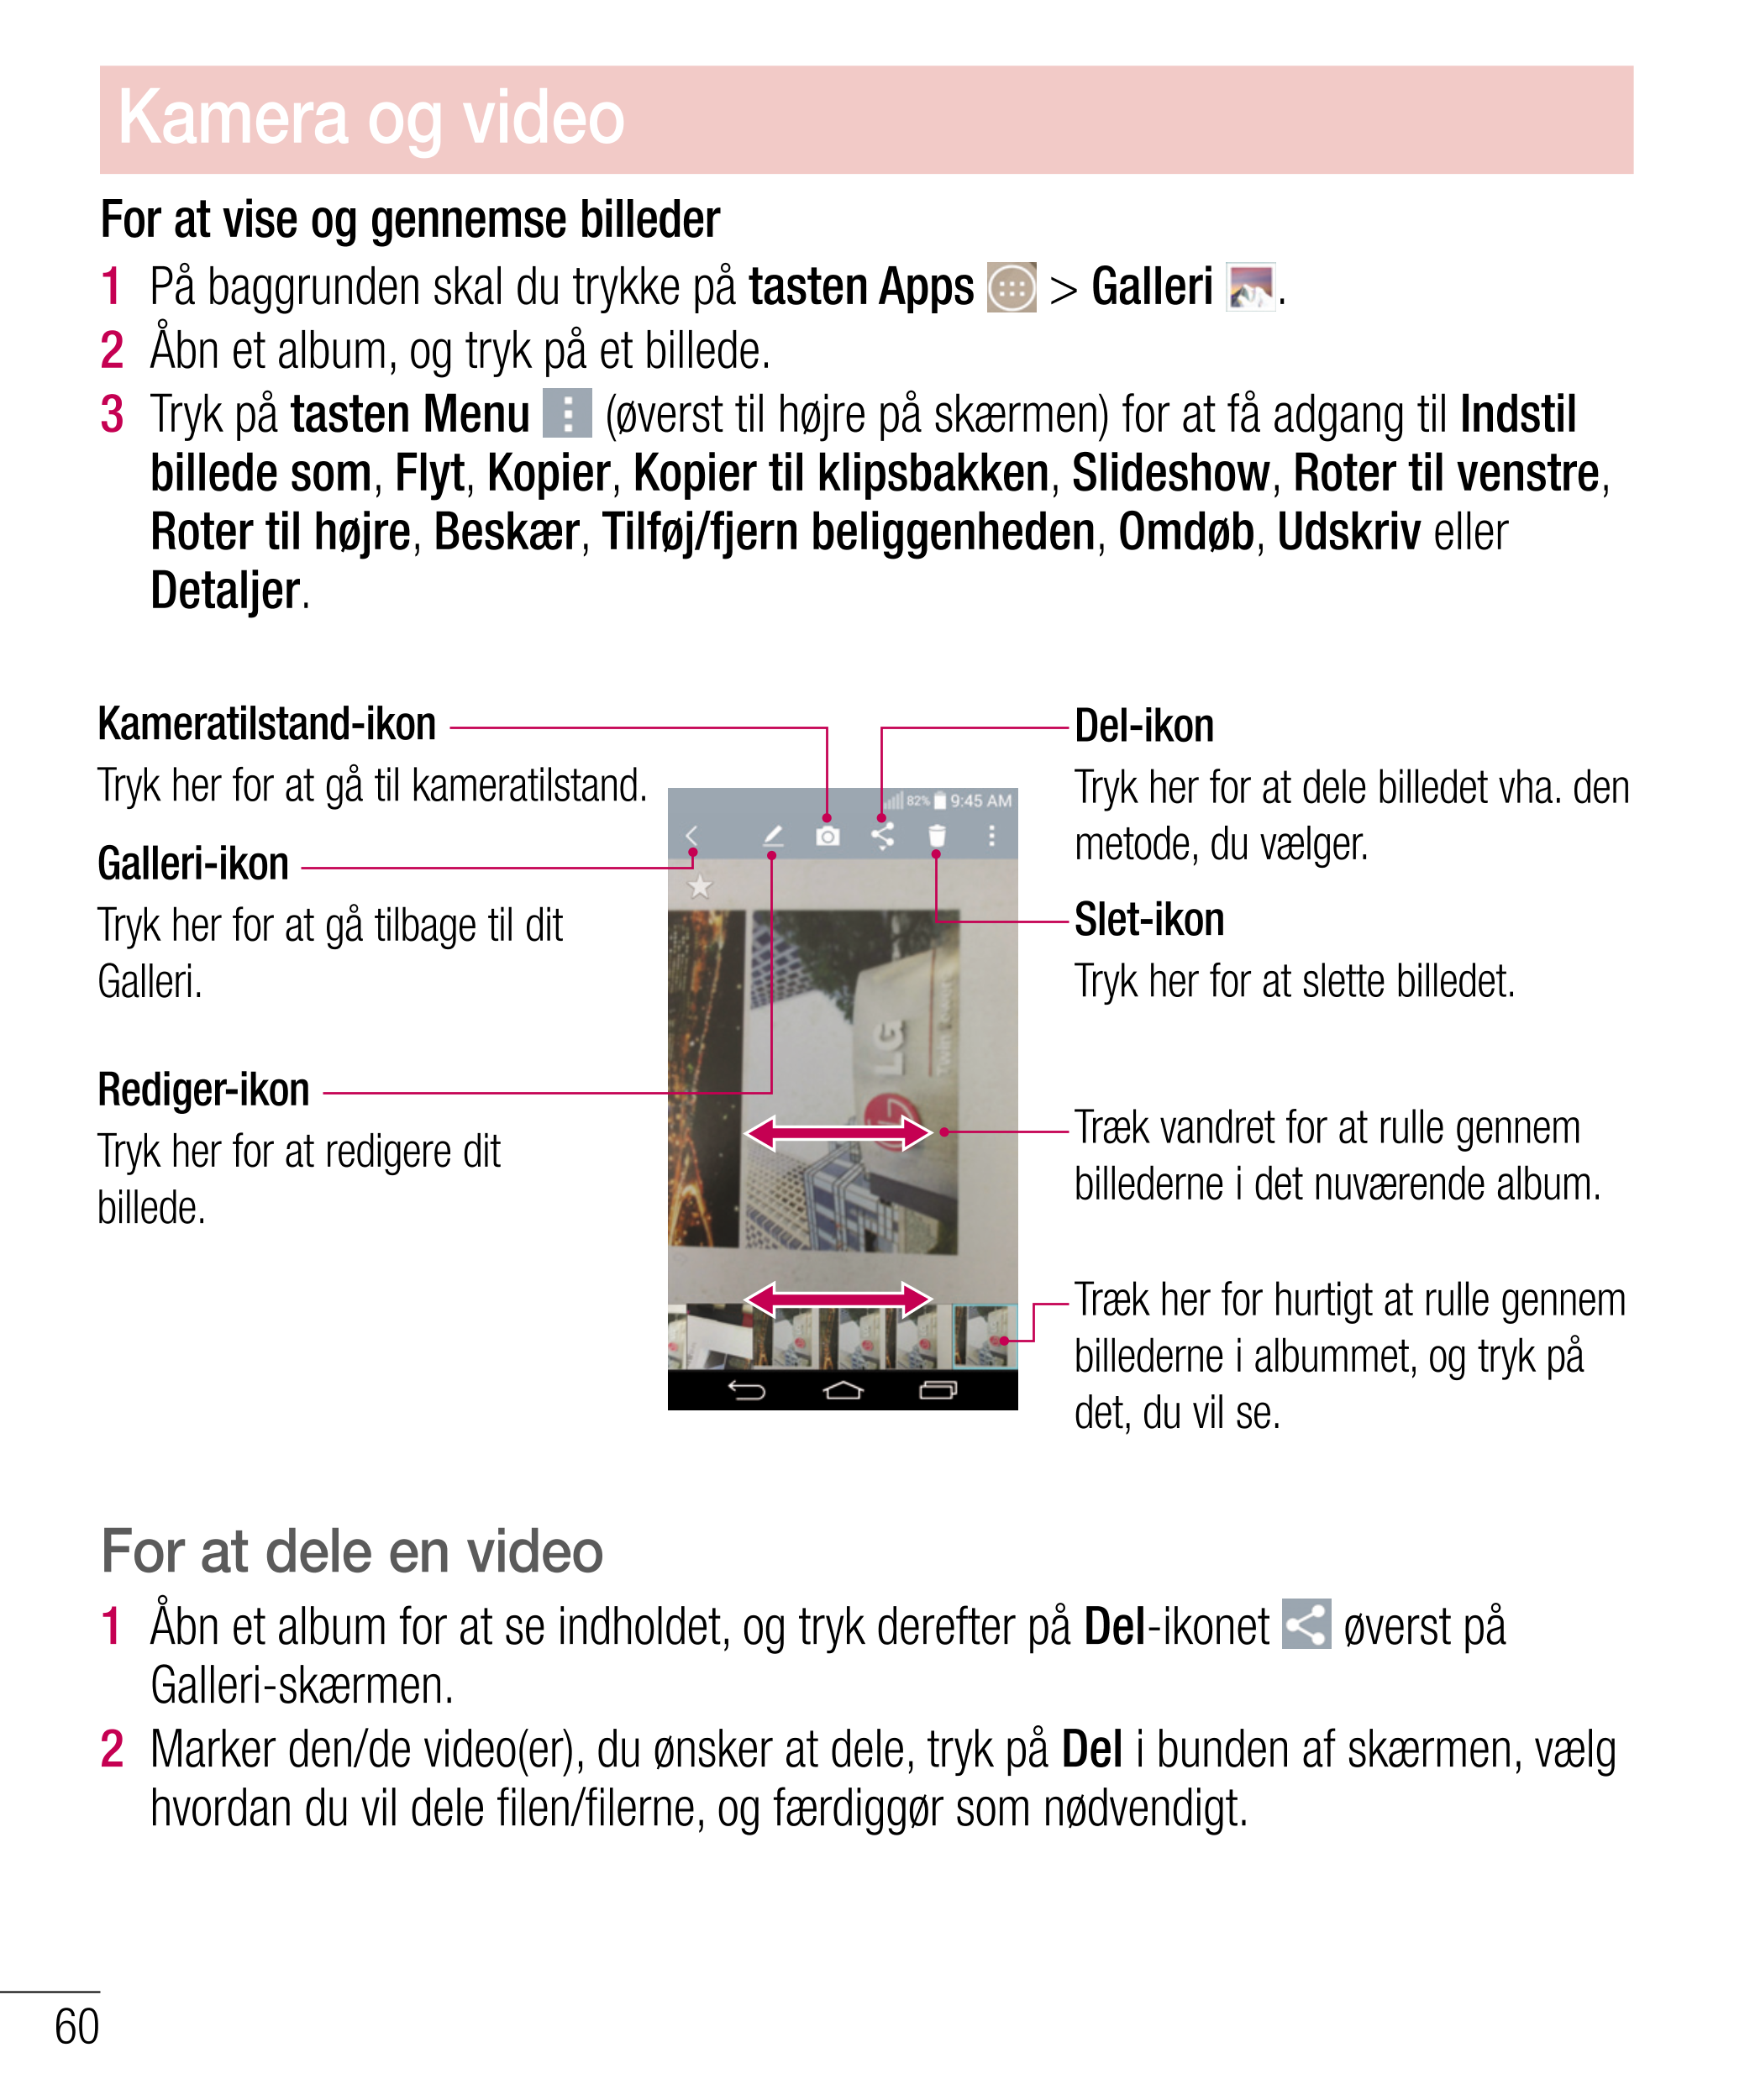 Kamera og video
For at vise og gennemse billeder
1   På baggrunden skal du trykke på  tasten Apps   >  Galleri  .
2   Åbn et alb